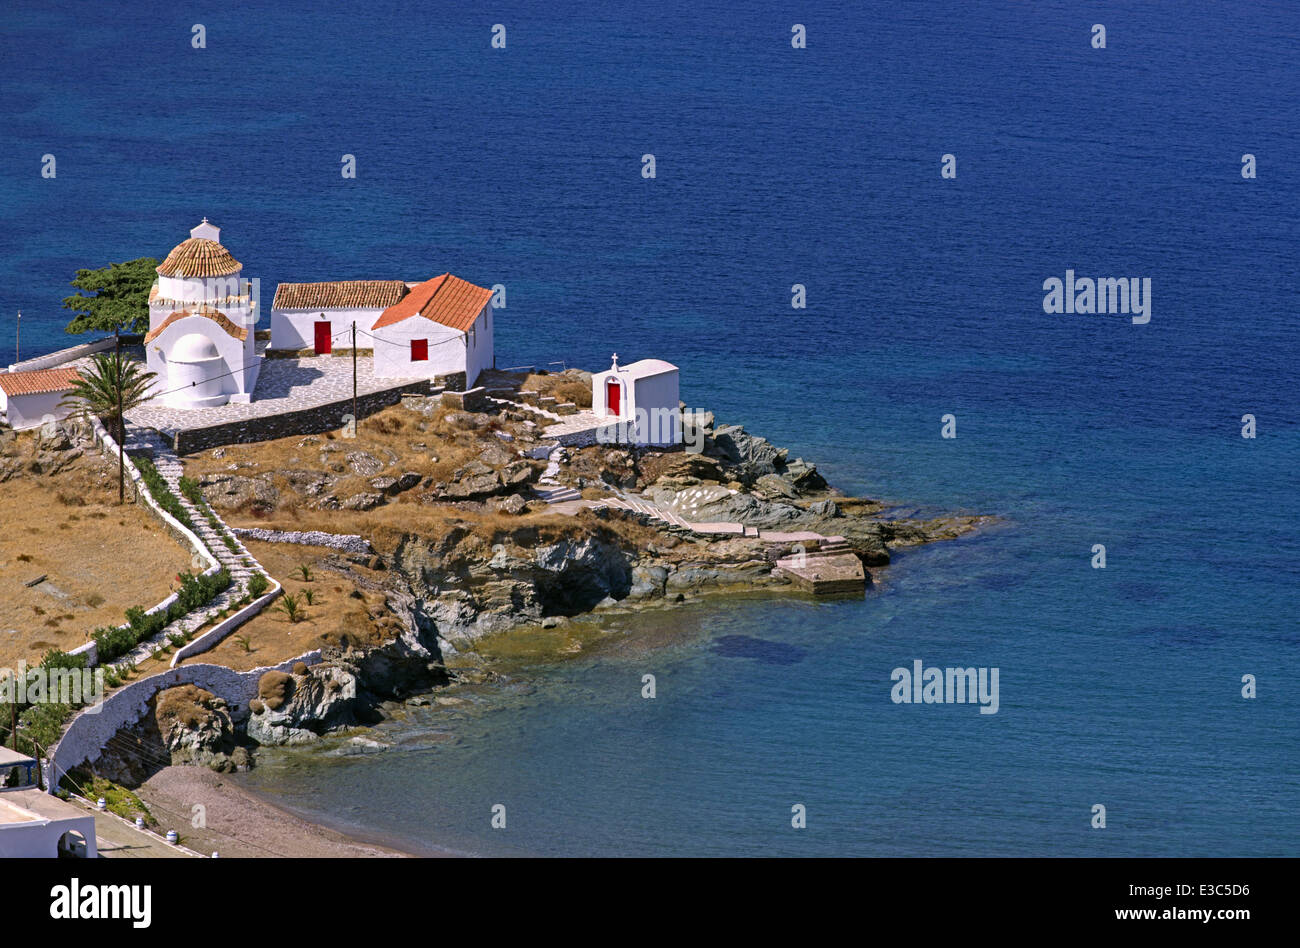 Panagia Frlambouriani Kloster, gebaut am Rand eines Felsens, südlich von Merihas, der Hafen von Kythnos Insel, Kykladen, Griechenland Stockfoto